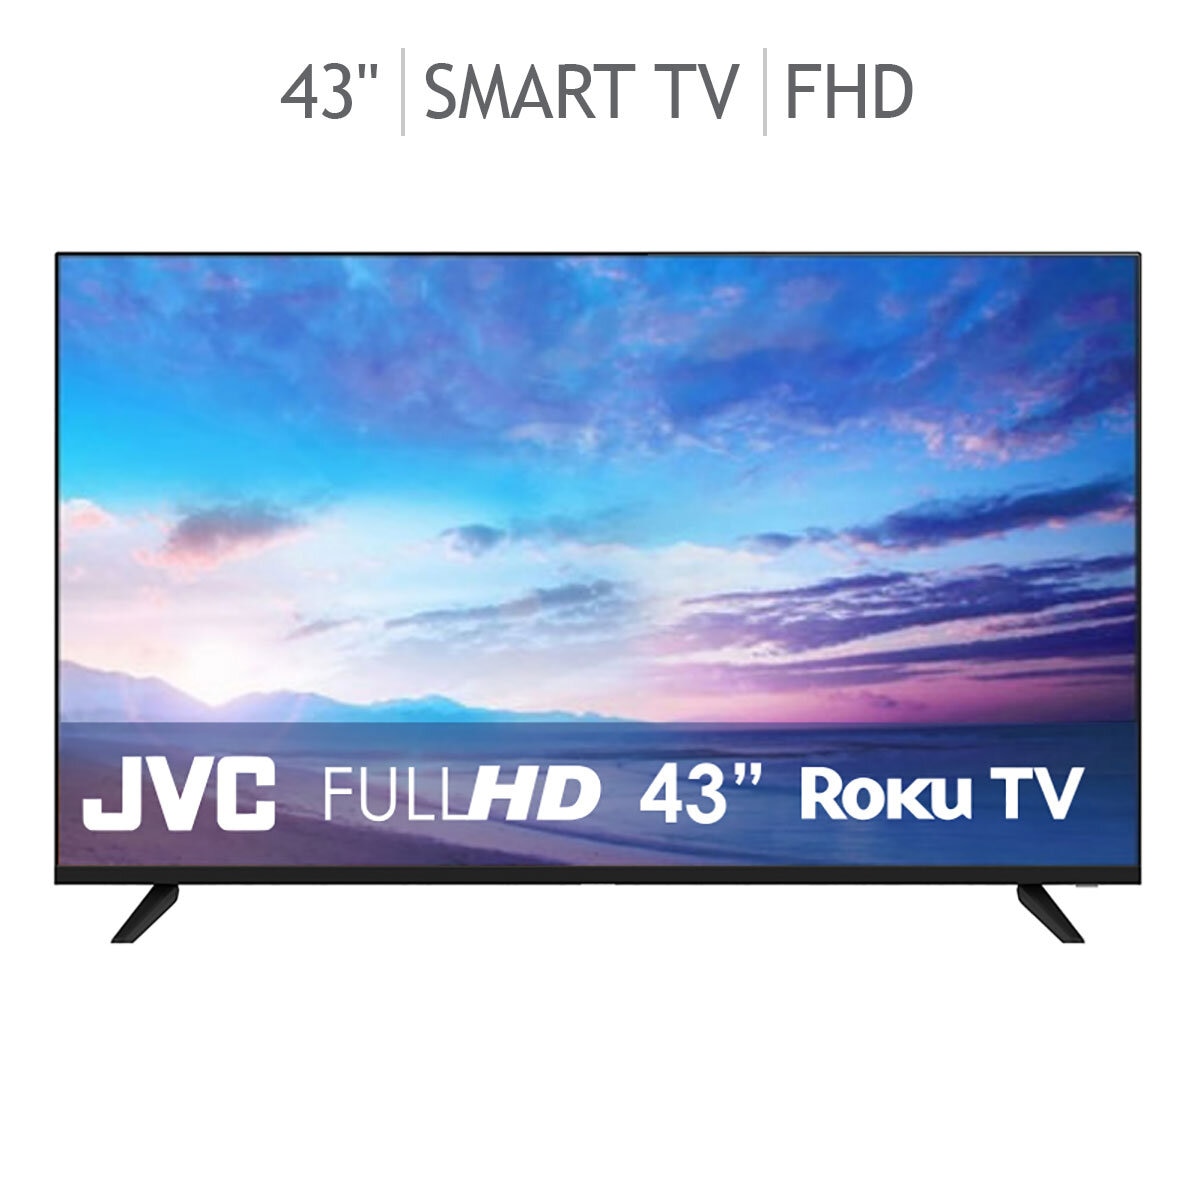 JVC Pantalla 43 FHD Smart TV | Costco México